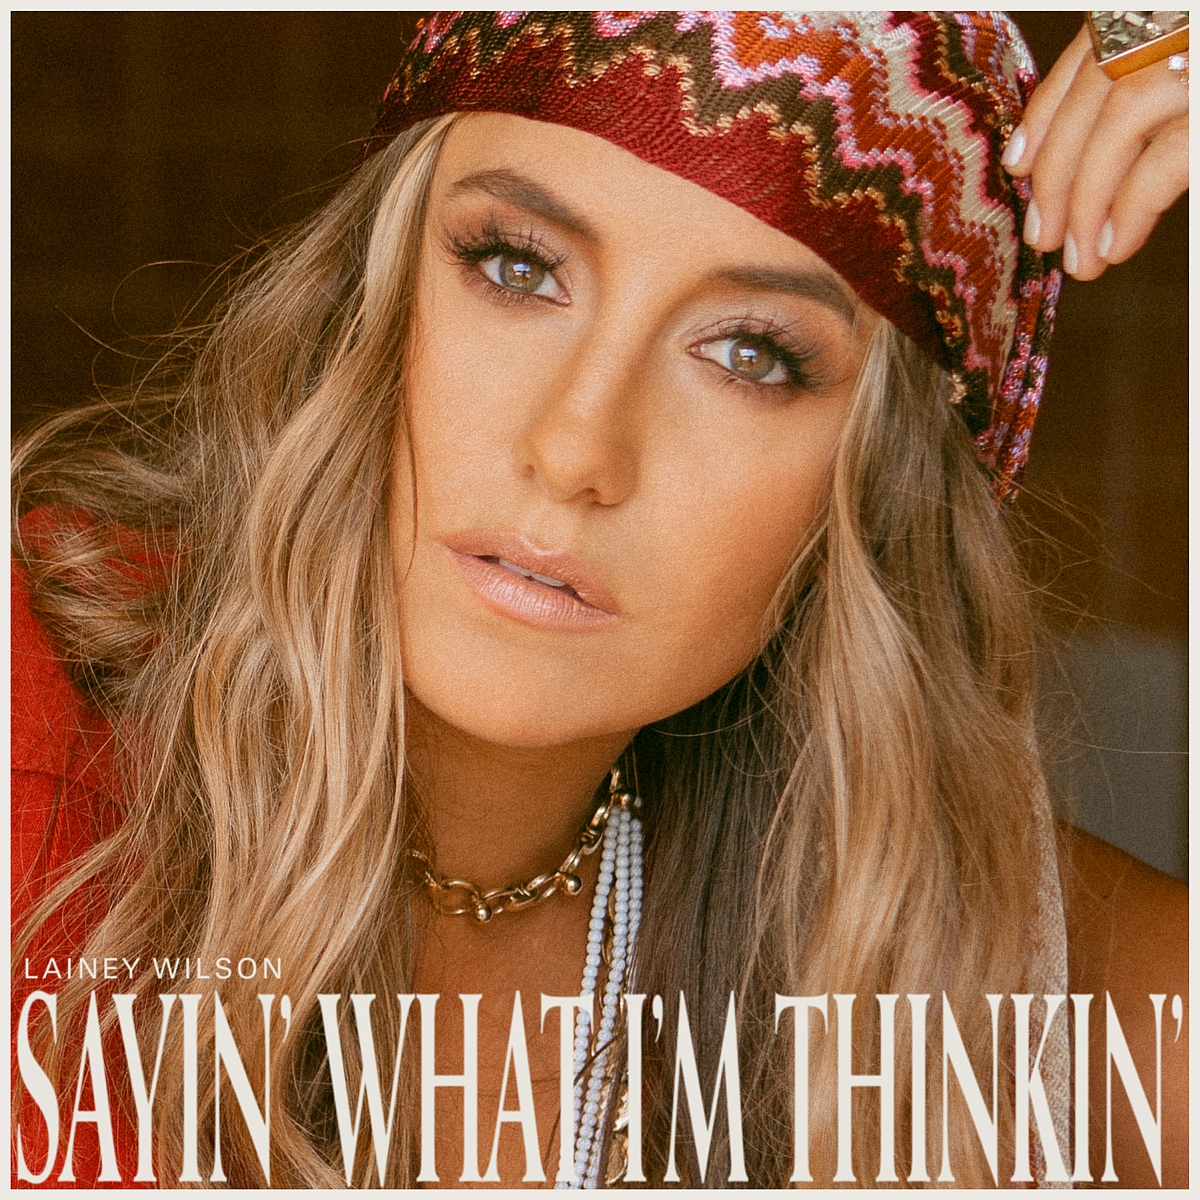 Auf dem Albumcover "Sayin' What I'm Thinkin'" von Lainey Wilson ist die Sängerin im Porträt zu sehen.